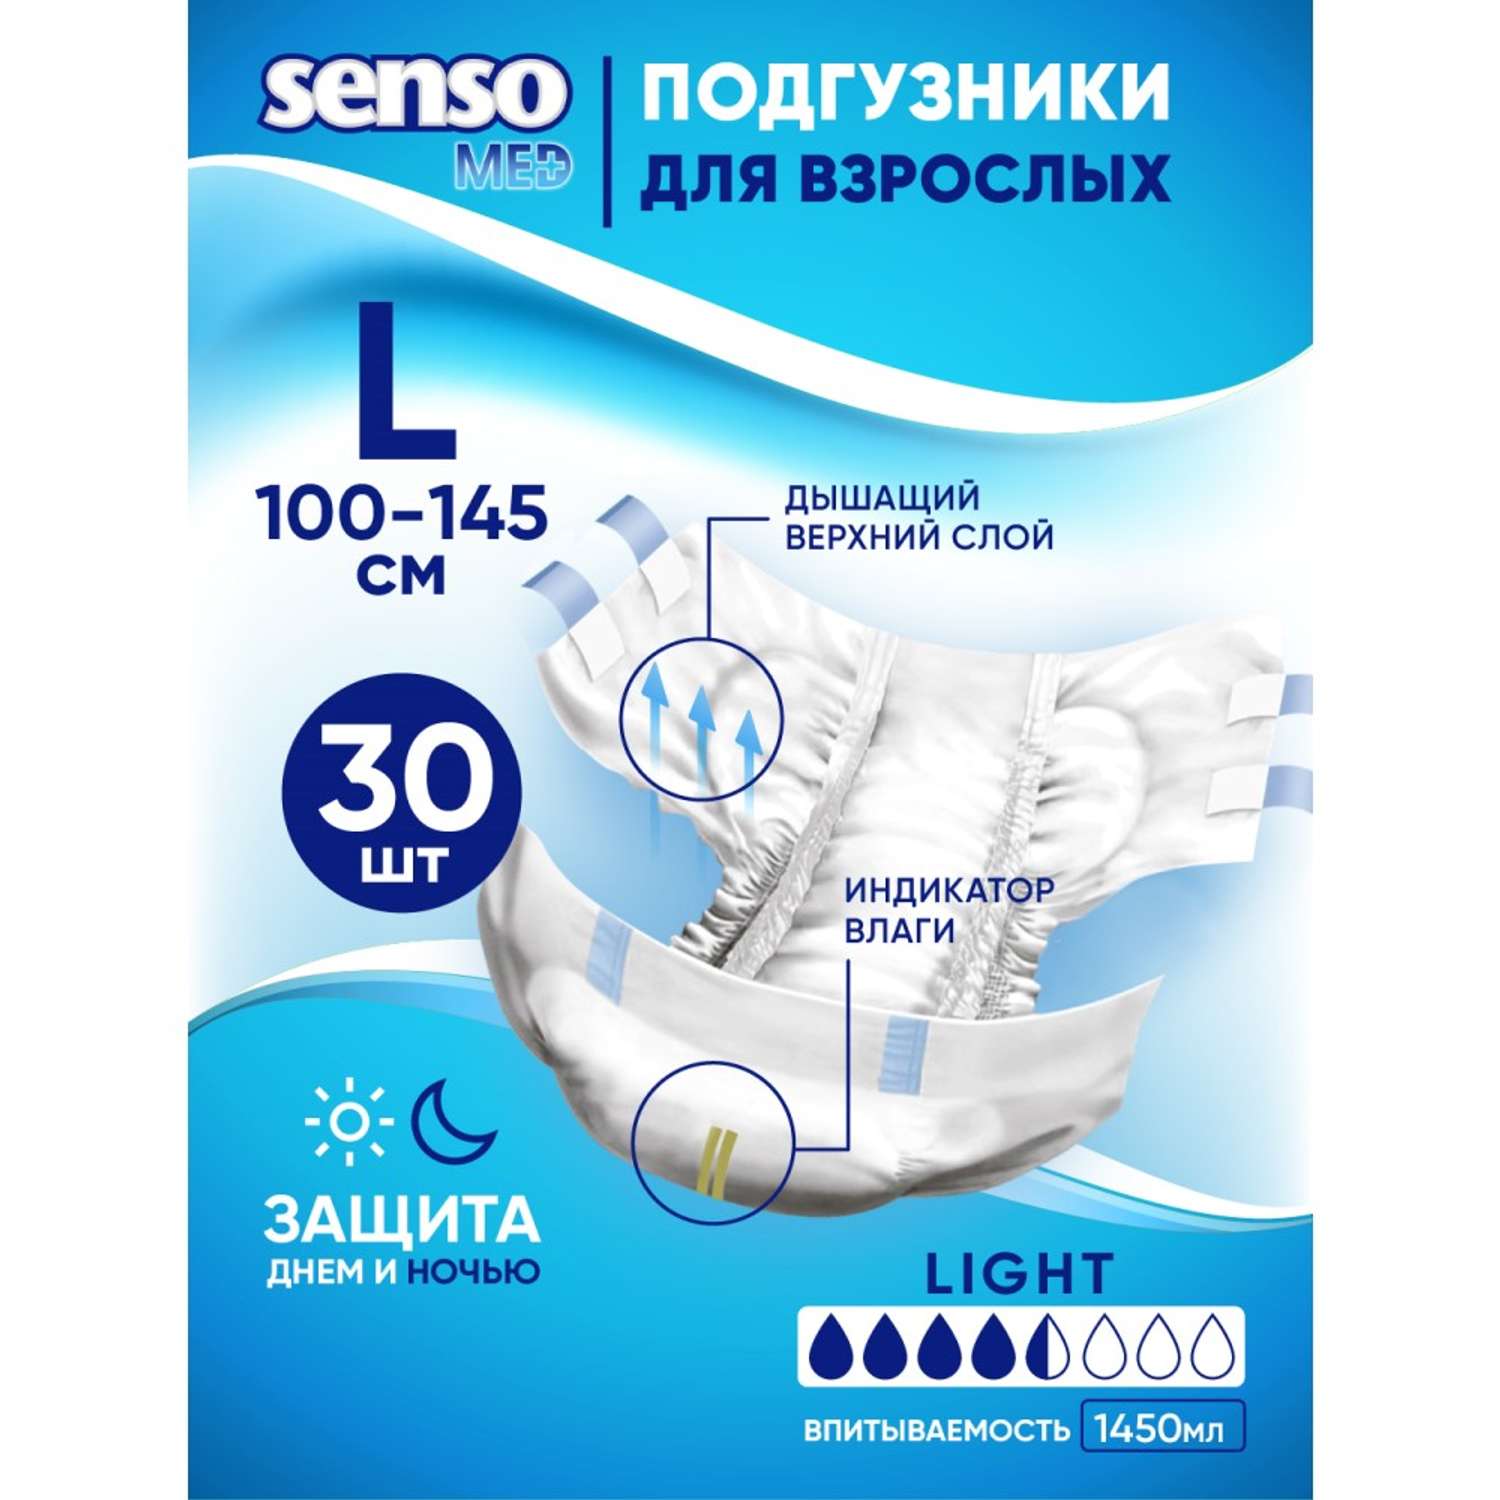 Подгузники для взрослых SENSO MED Light L 100-145 см 30 шт. - фото 1